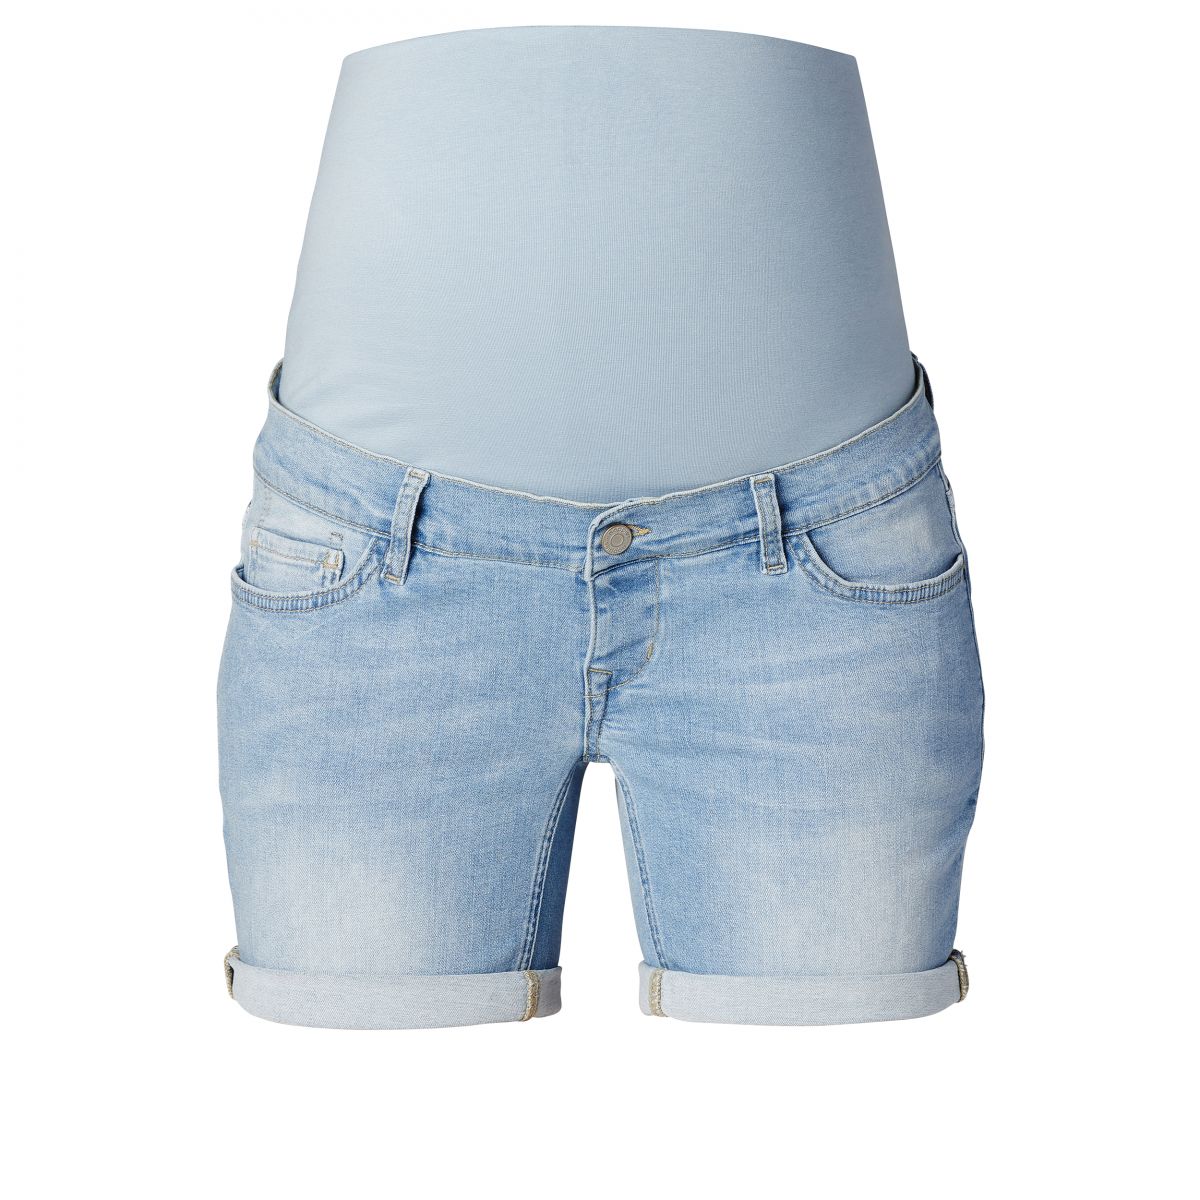 gokken Kracht evenwicht NOPPIES - jeans shorts Callao vintage blue - Bellyfashion.nl